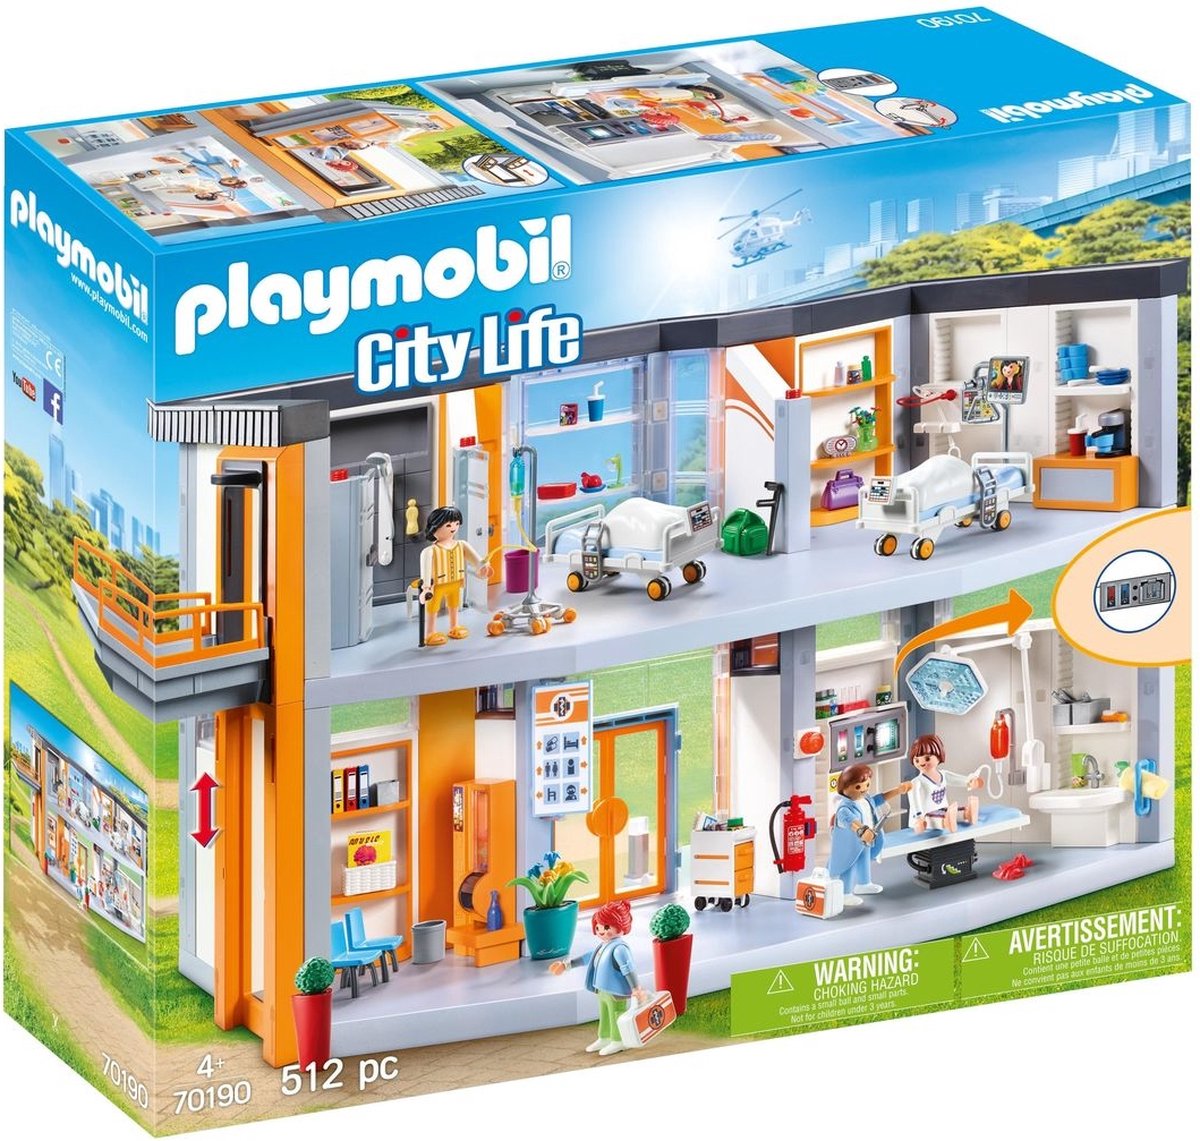 Bon plan  : Maison Playmobil moins chère (23,33€)